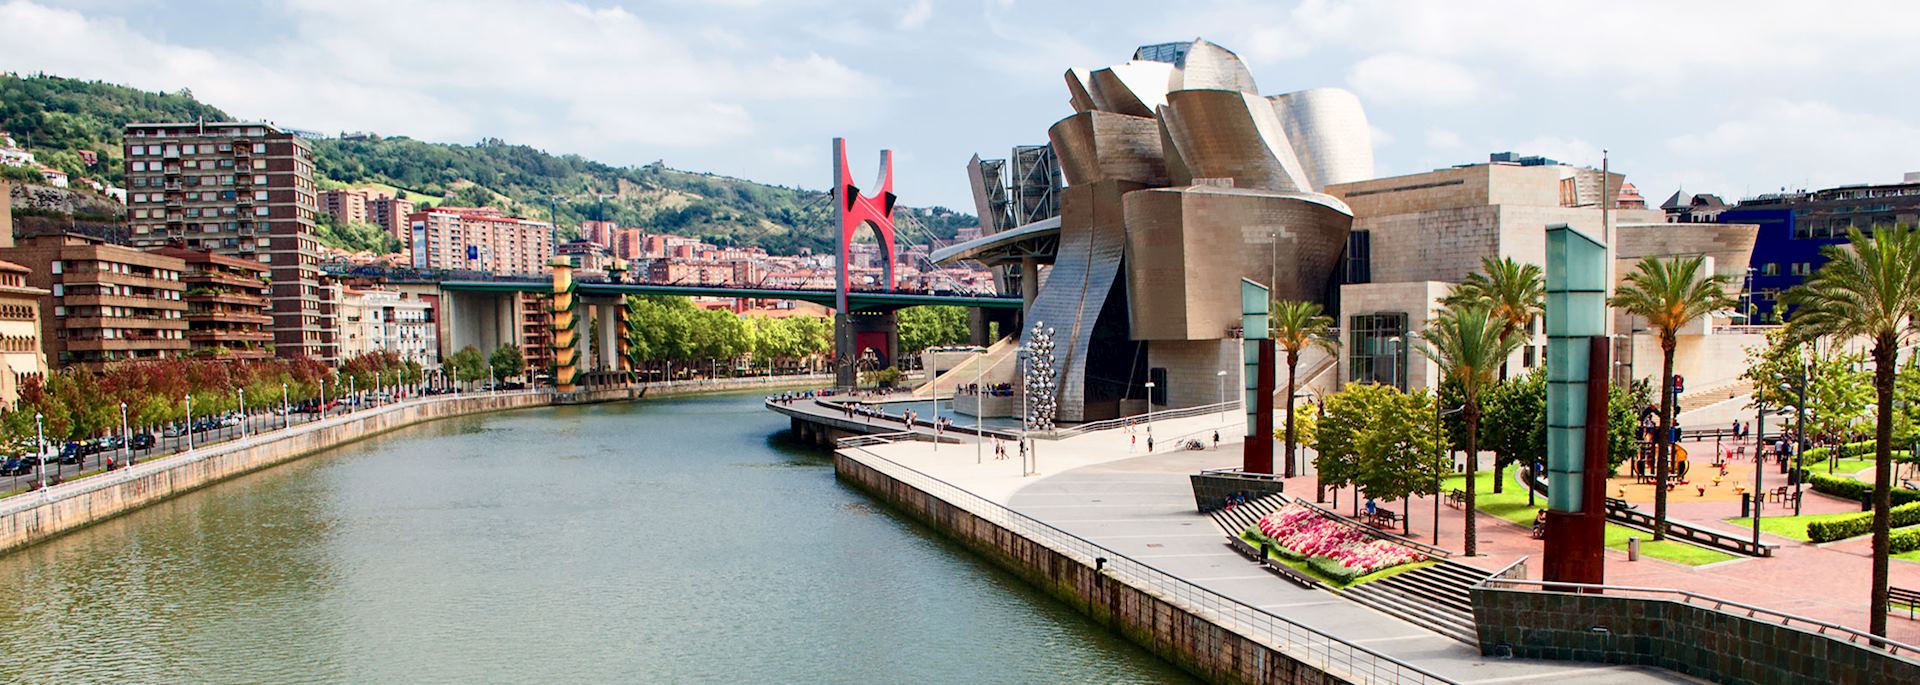 Modern art museum, Bilbao